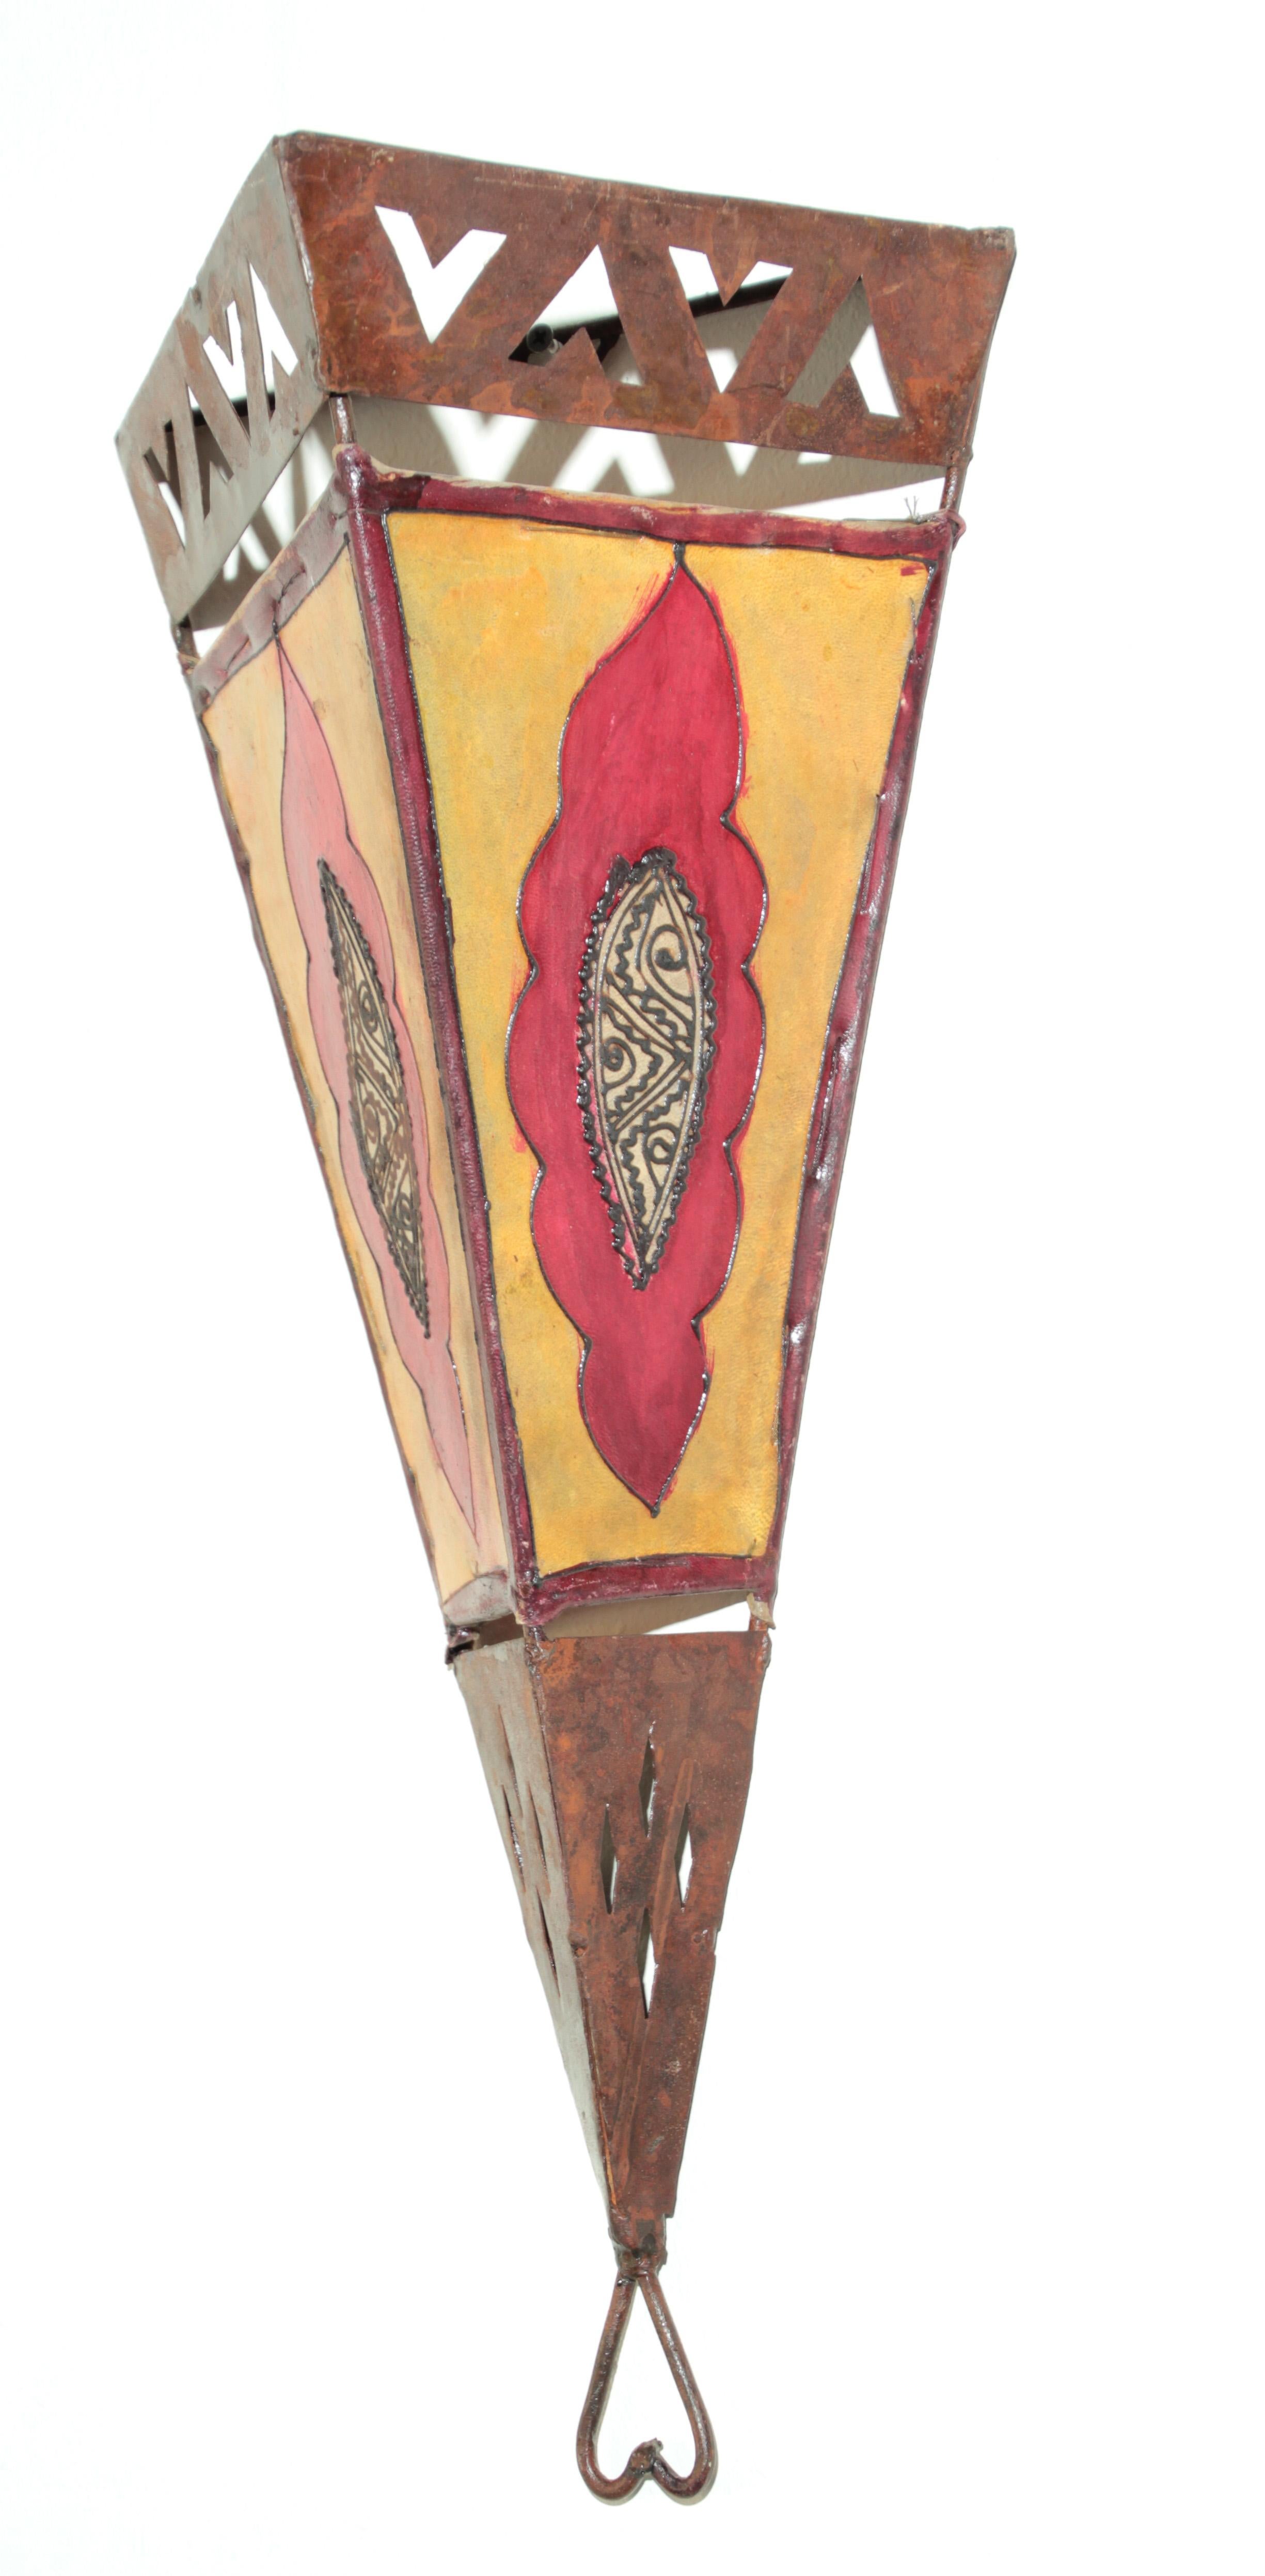 Großer afrikanischer Stammeskunst Pergament Wandleuchte mit einer großen dreieckigen Form A auf Eisen genäht und handbemalt Oberfläche.
Diese handgefertigten Vintage-Volkskunstwerke können als Wandlampenschirm oder einfach als dekorative Wandkunst